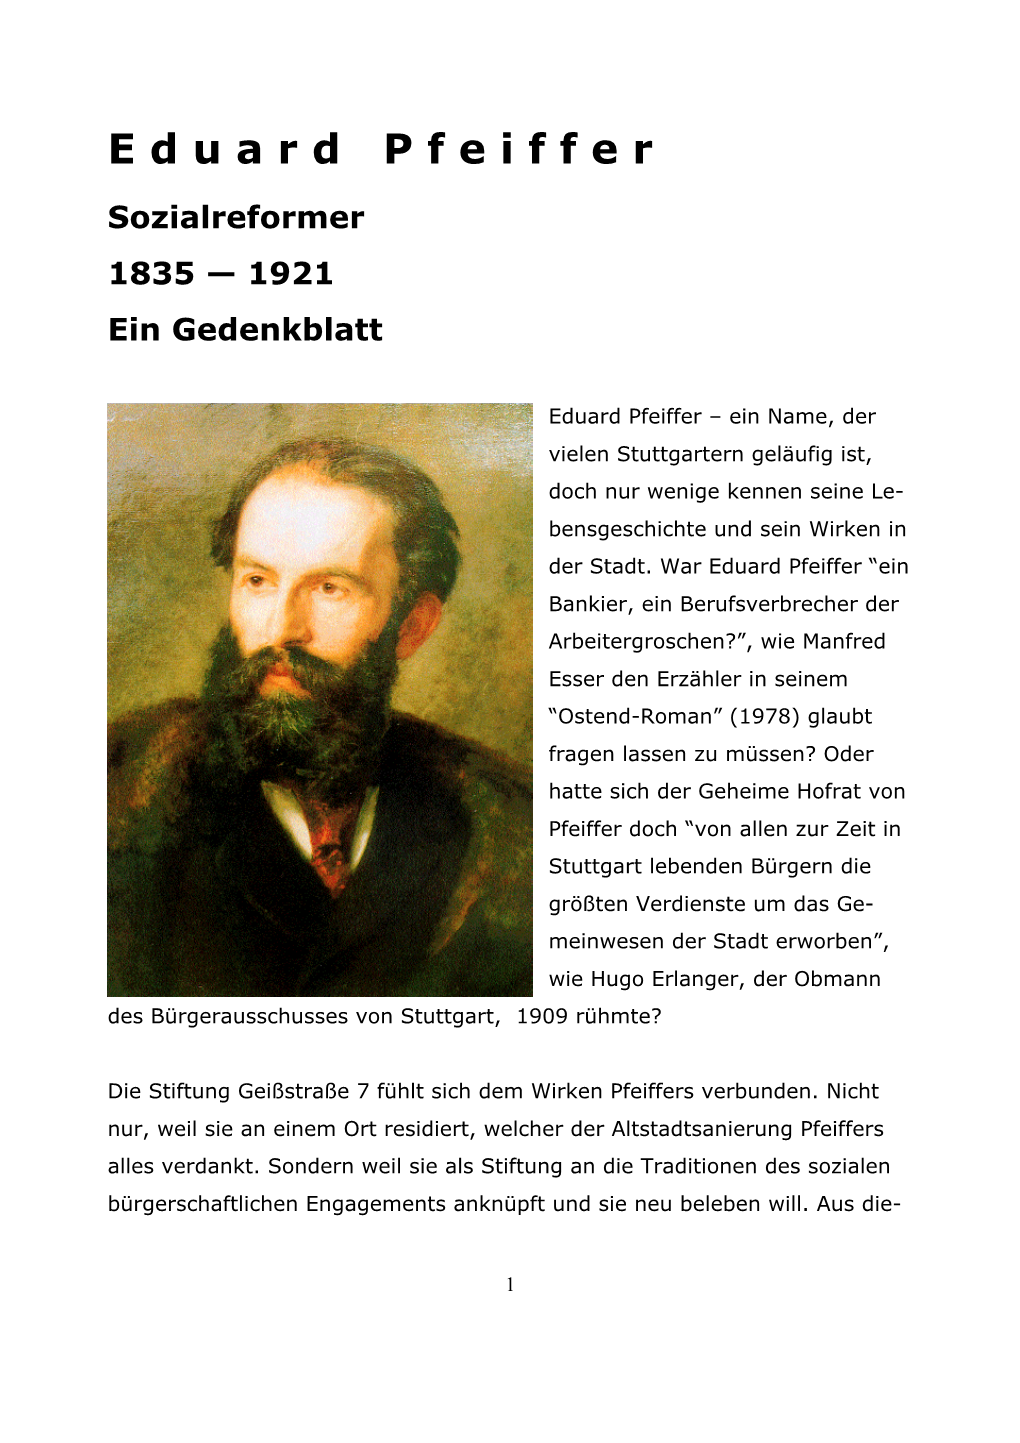 Denkblatt Eduard Pfeiffer